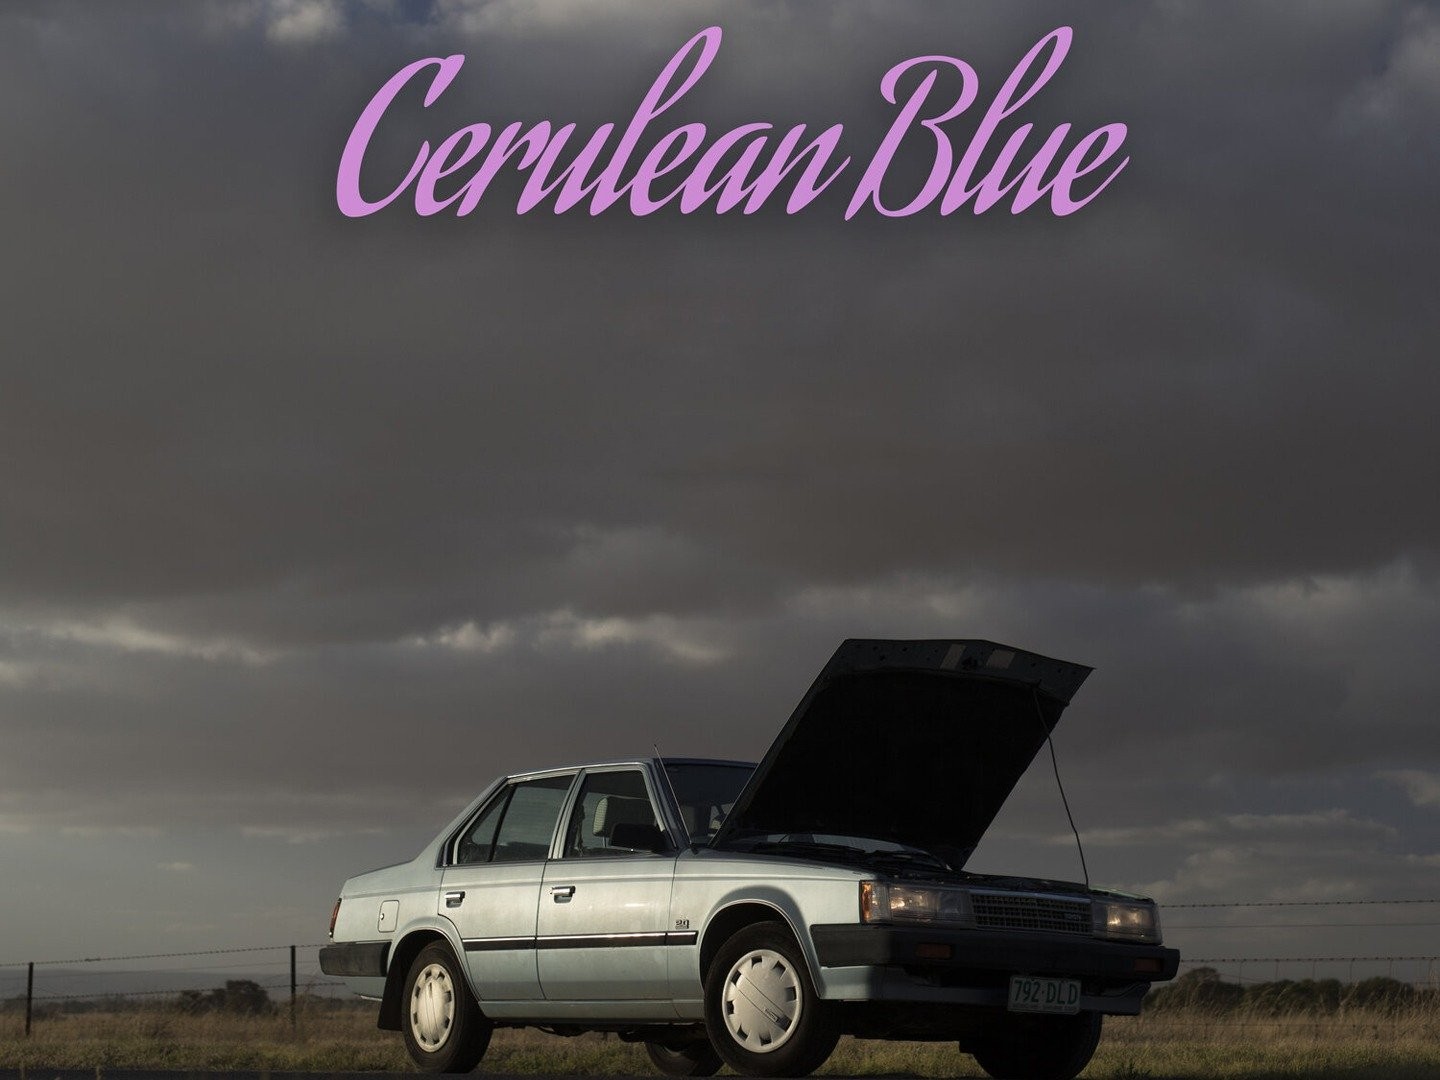 Cerulean Blue (2019) - IMDb